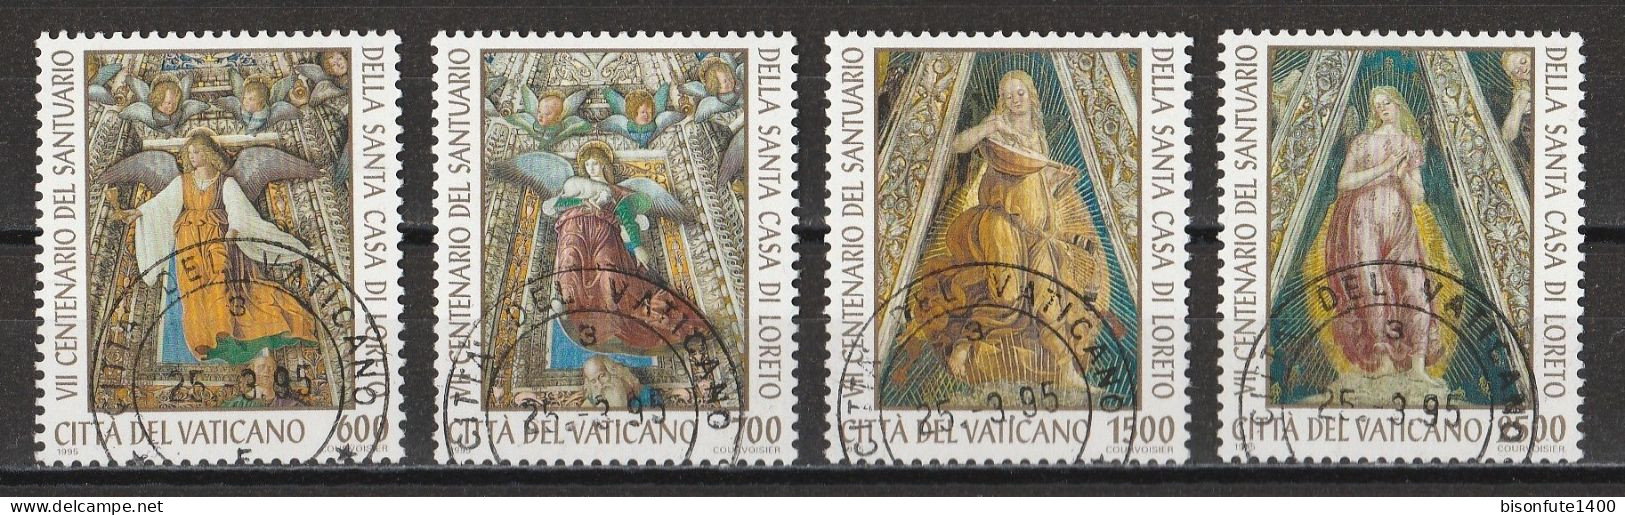 Vatican 1995 : Timbres Yvert & Tellier N° 1000 - 1001 - 1002 Et 1003 Oblitérés - Gebruikt